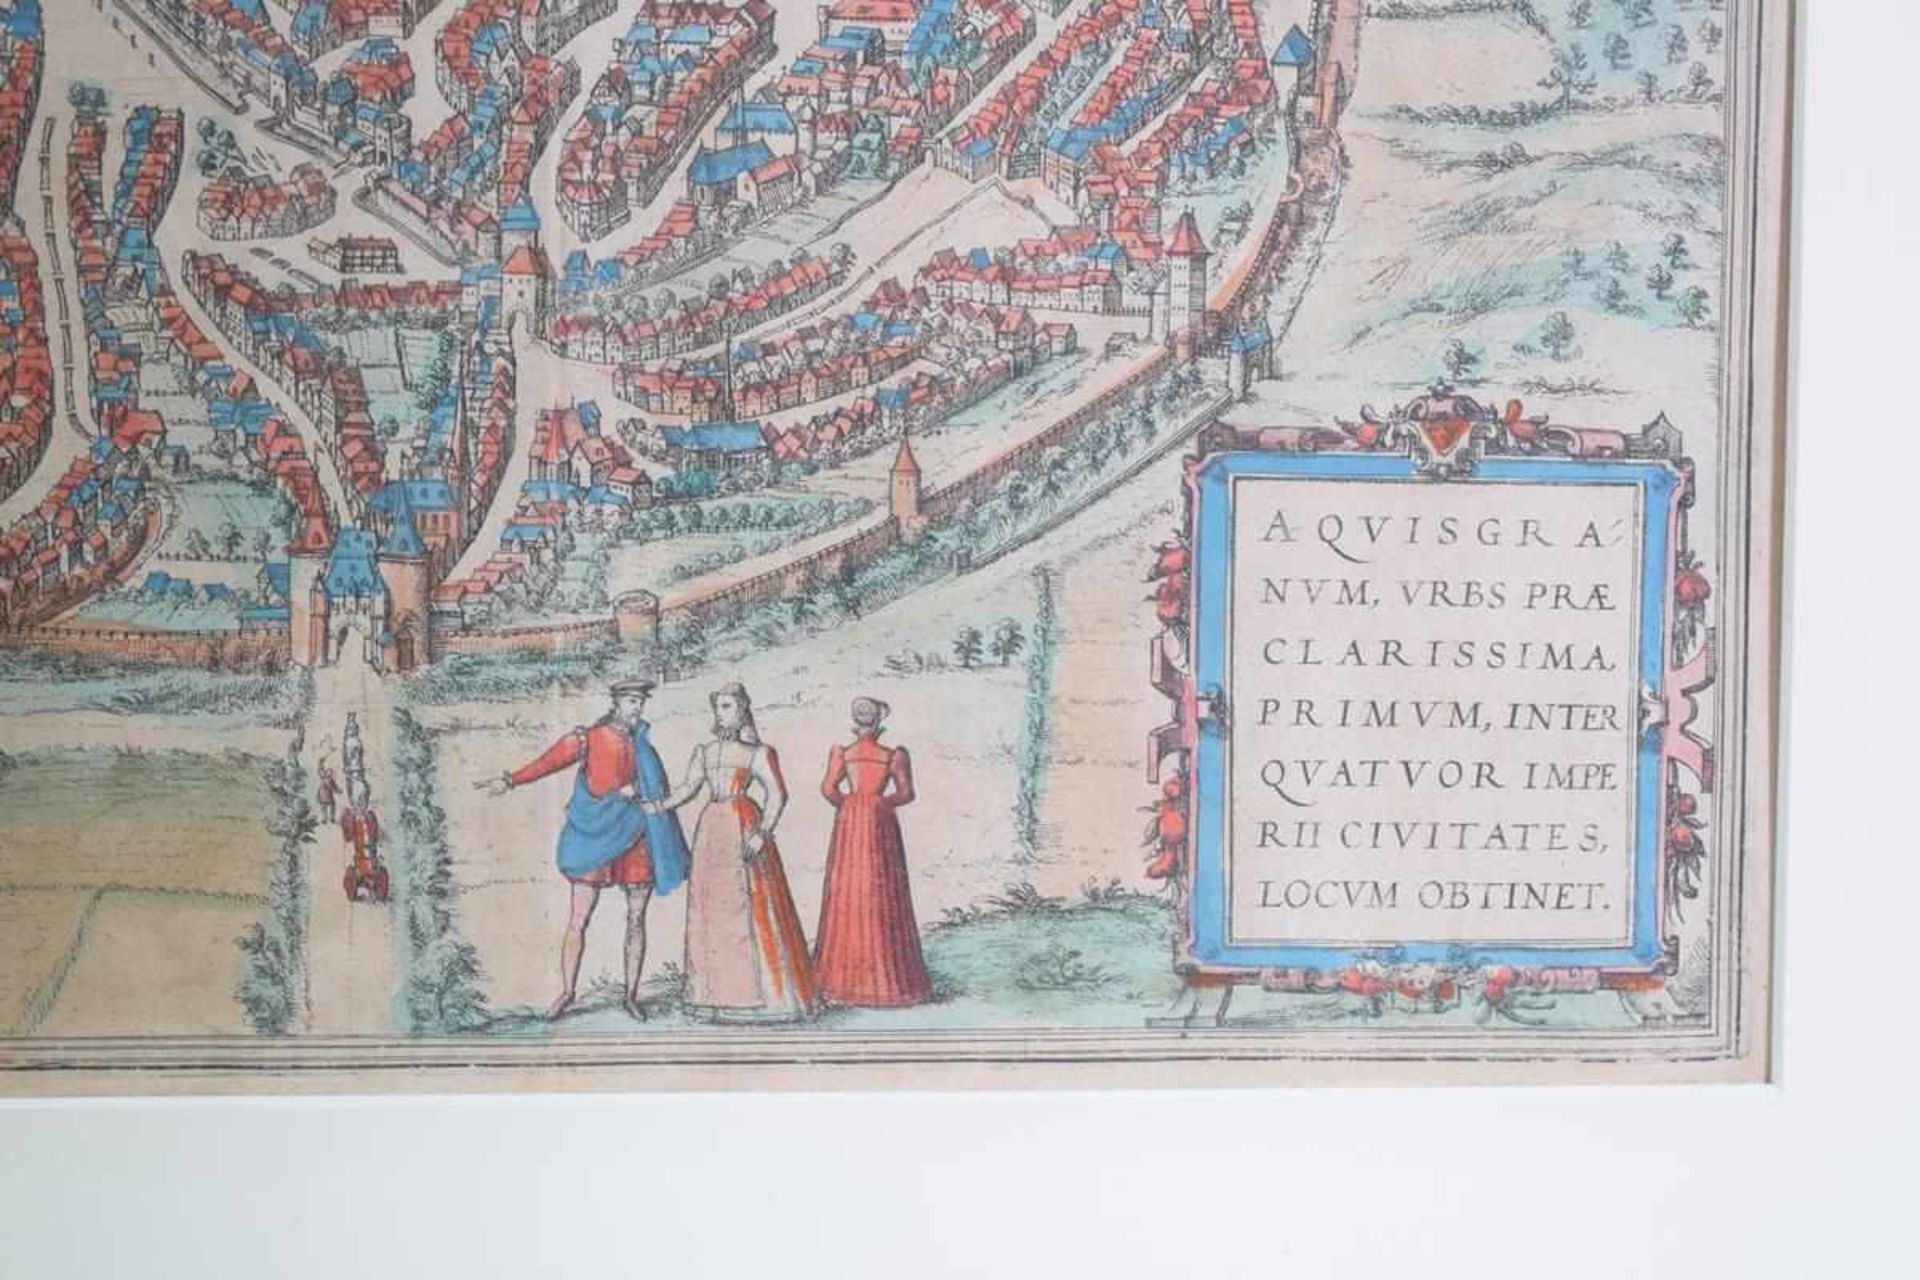 Alte Kolorierte Grafik "Aich" Aquisgra um 1600Stadtansicht Aachen um 1600, Kolorierte Grafik, Aich - Bild 2 aus 2